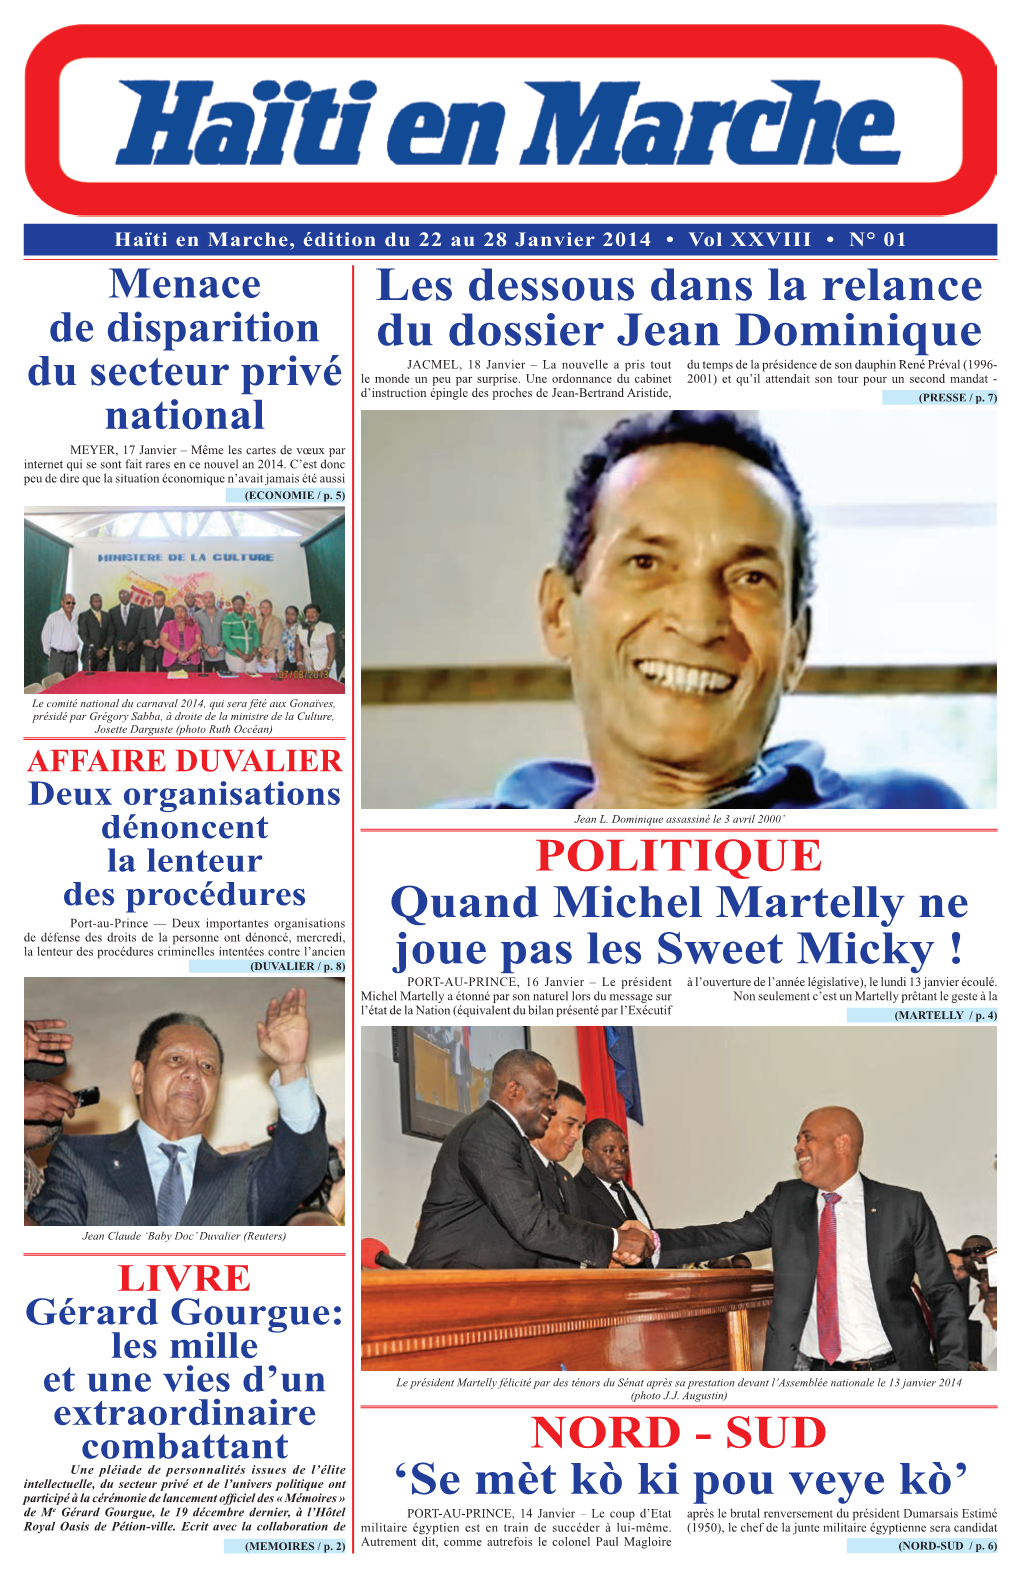 Les Dessous Dans La Relance Du Dossier Jean Dominique P.1 Présidentiel Rafle Tous Les Postes POLITIQUE-ECONOMIE P-Au-P, 16 Janv